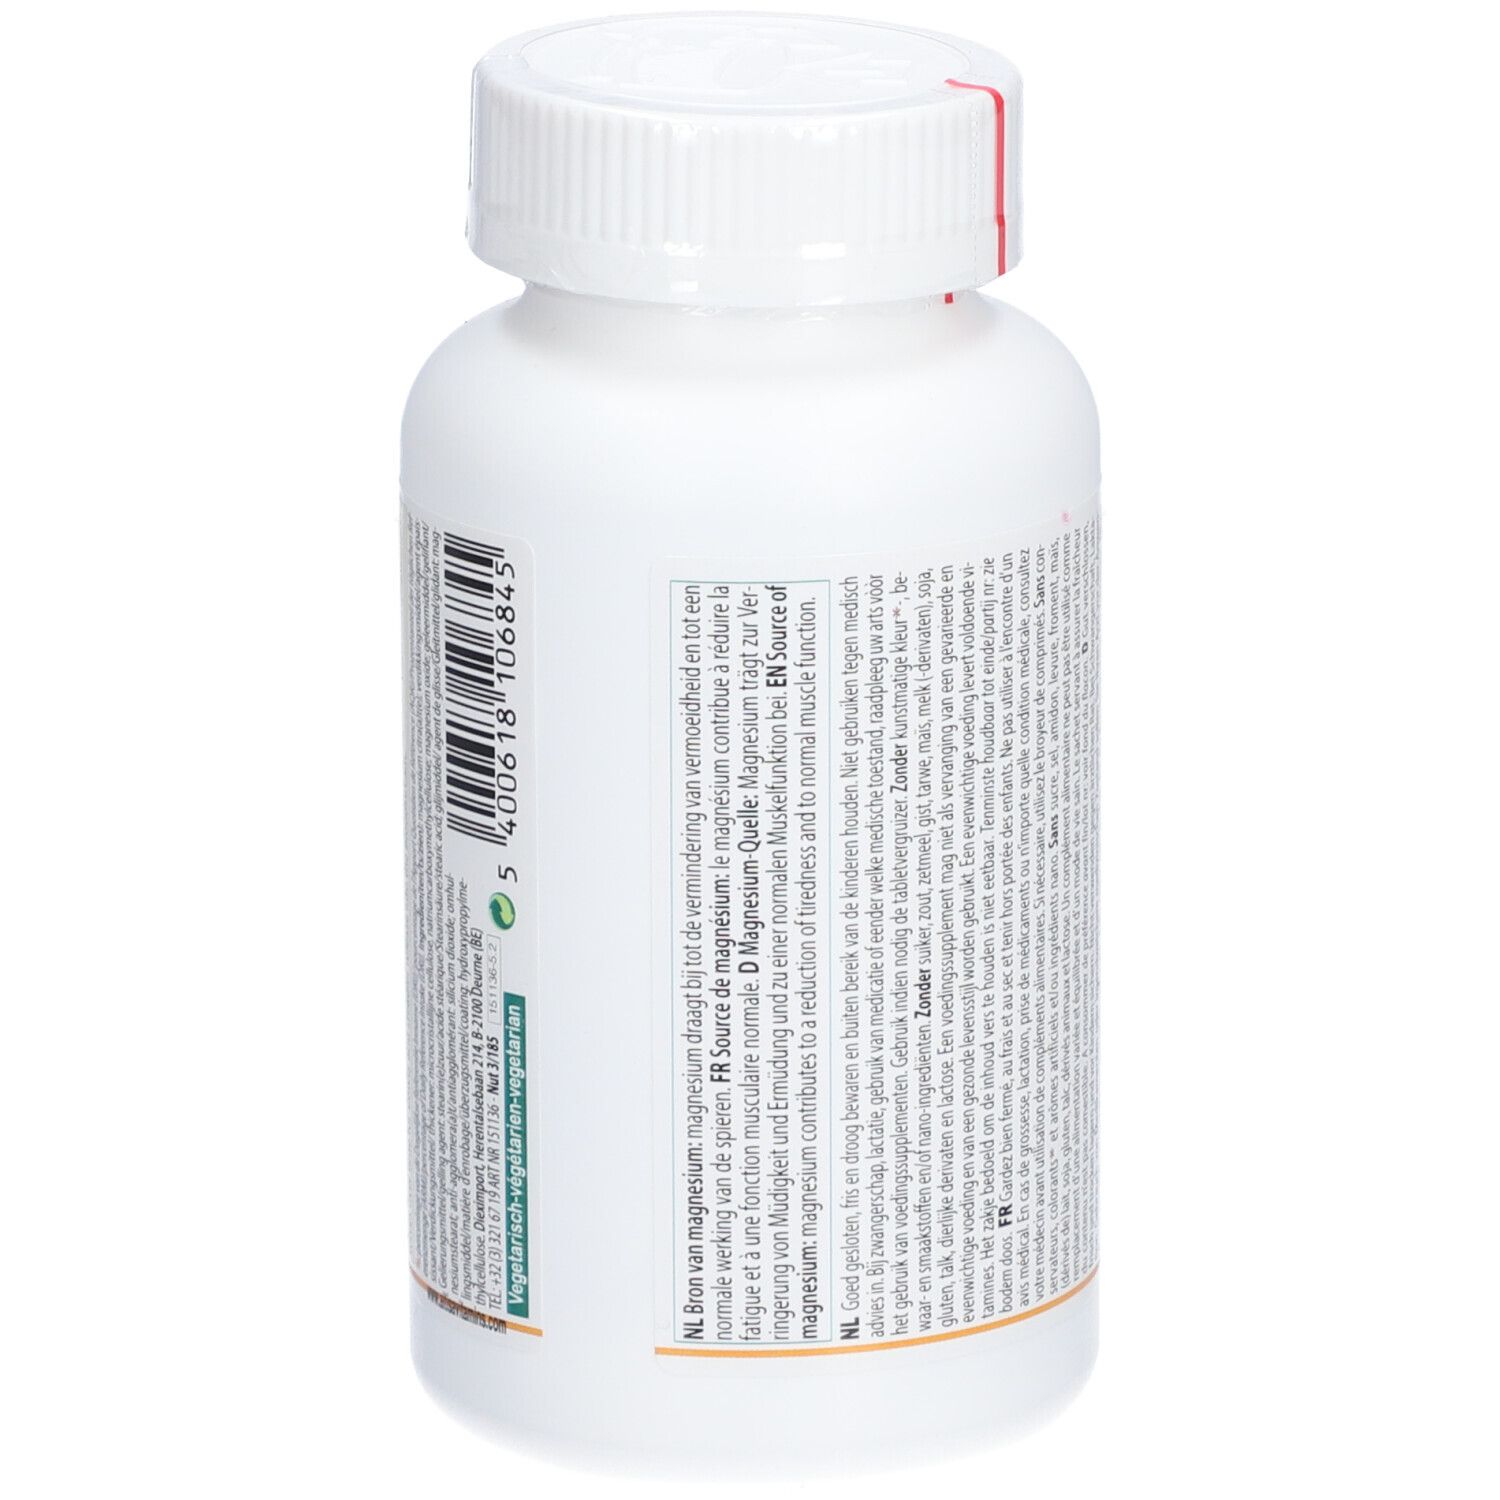 Altisa® Magnesiumcitrat 220 mg